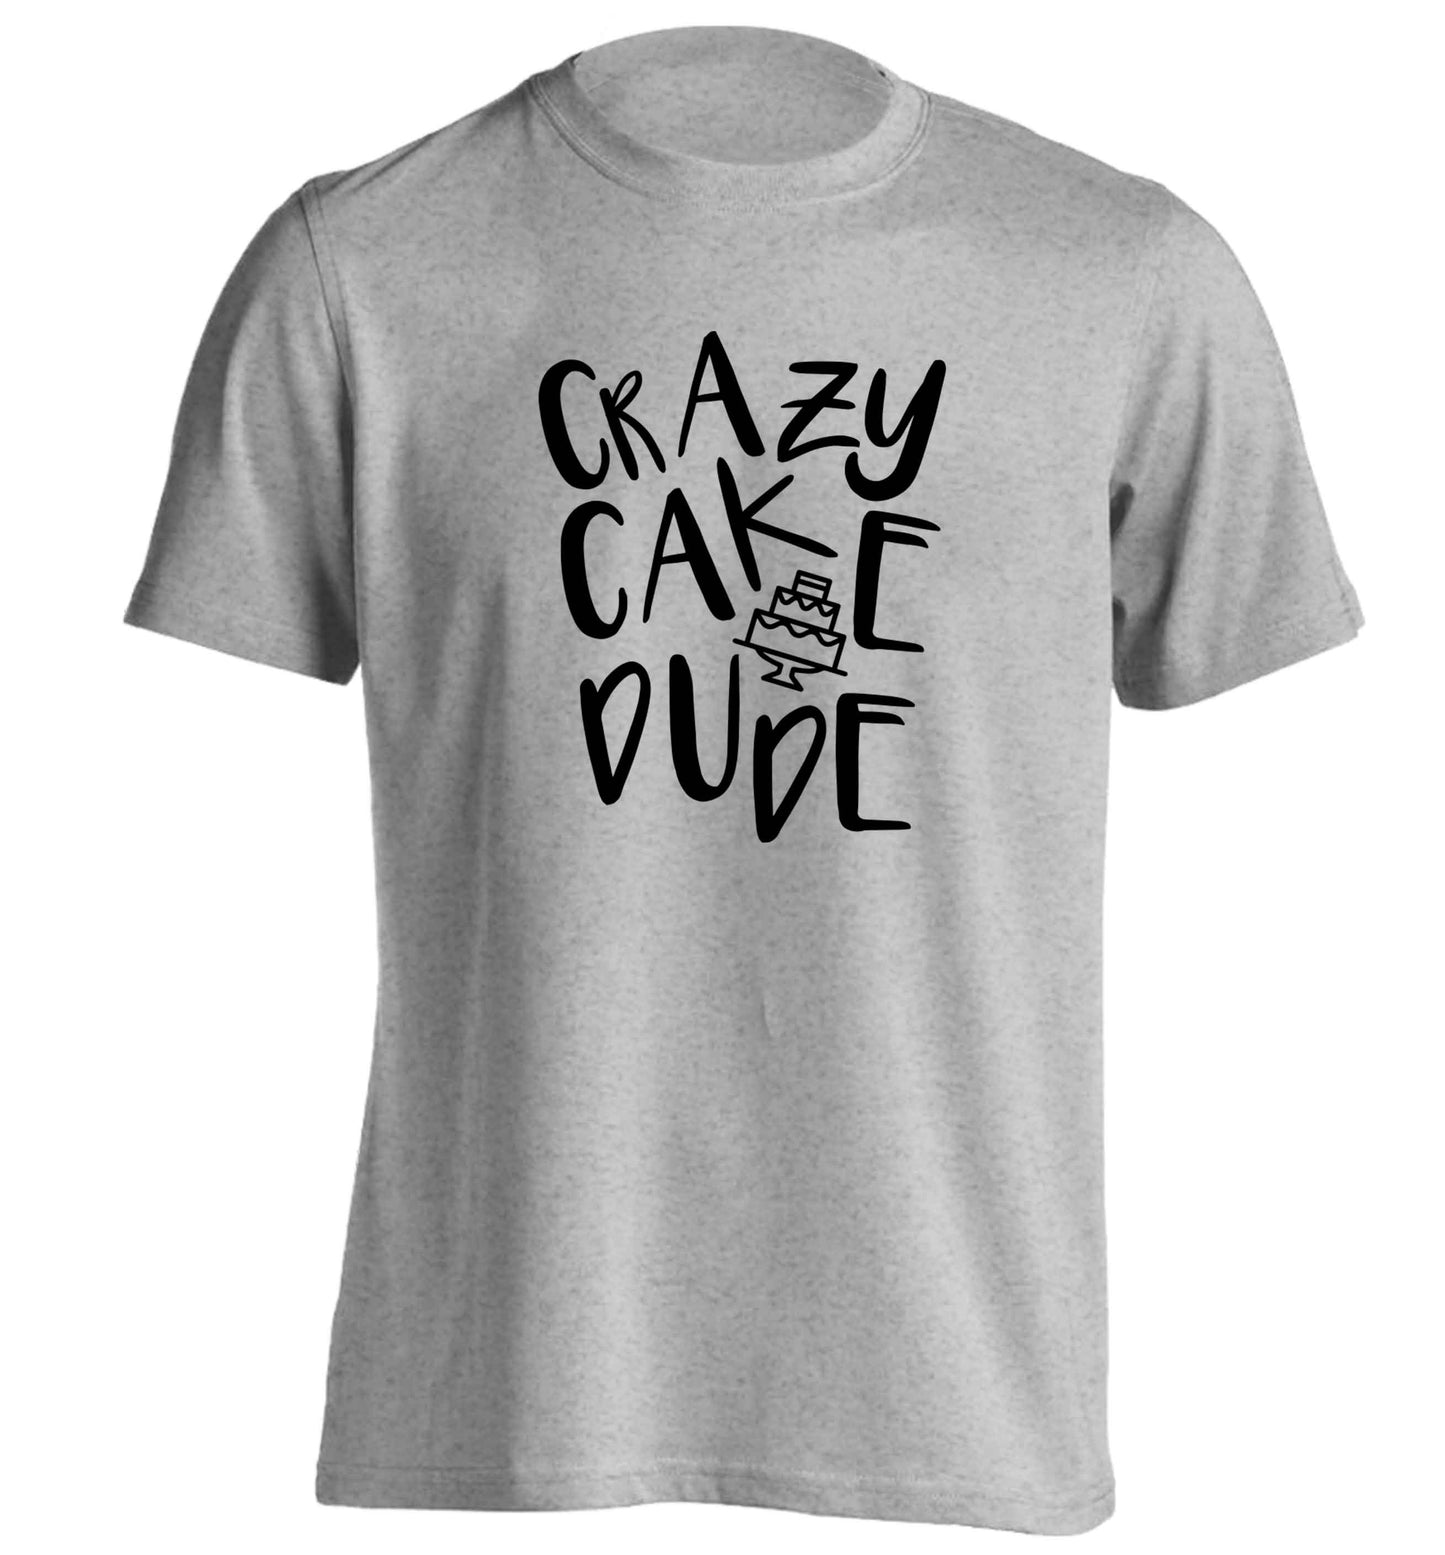 Crazy cake dude adults unisex grey Tshirt 2XL